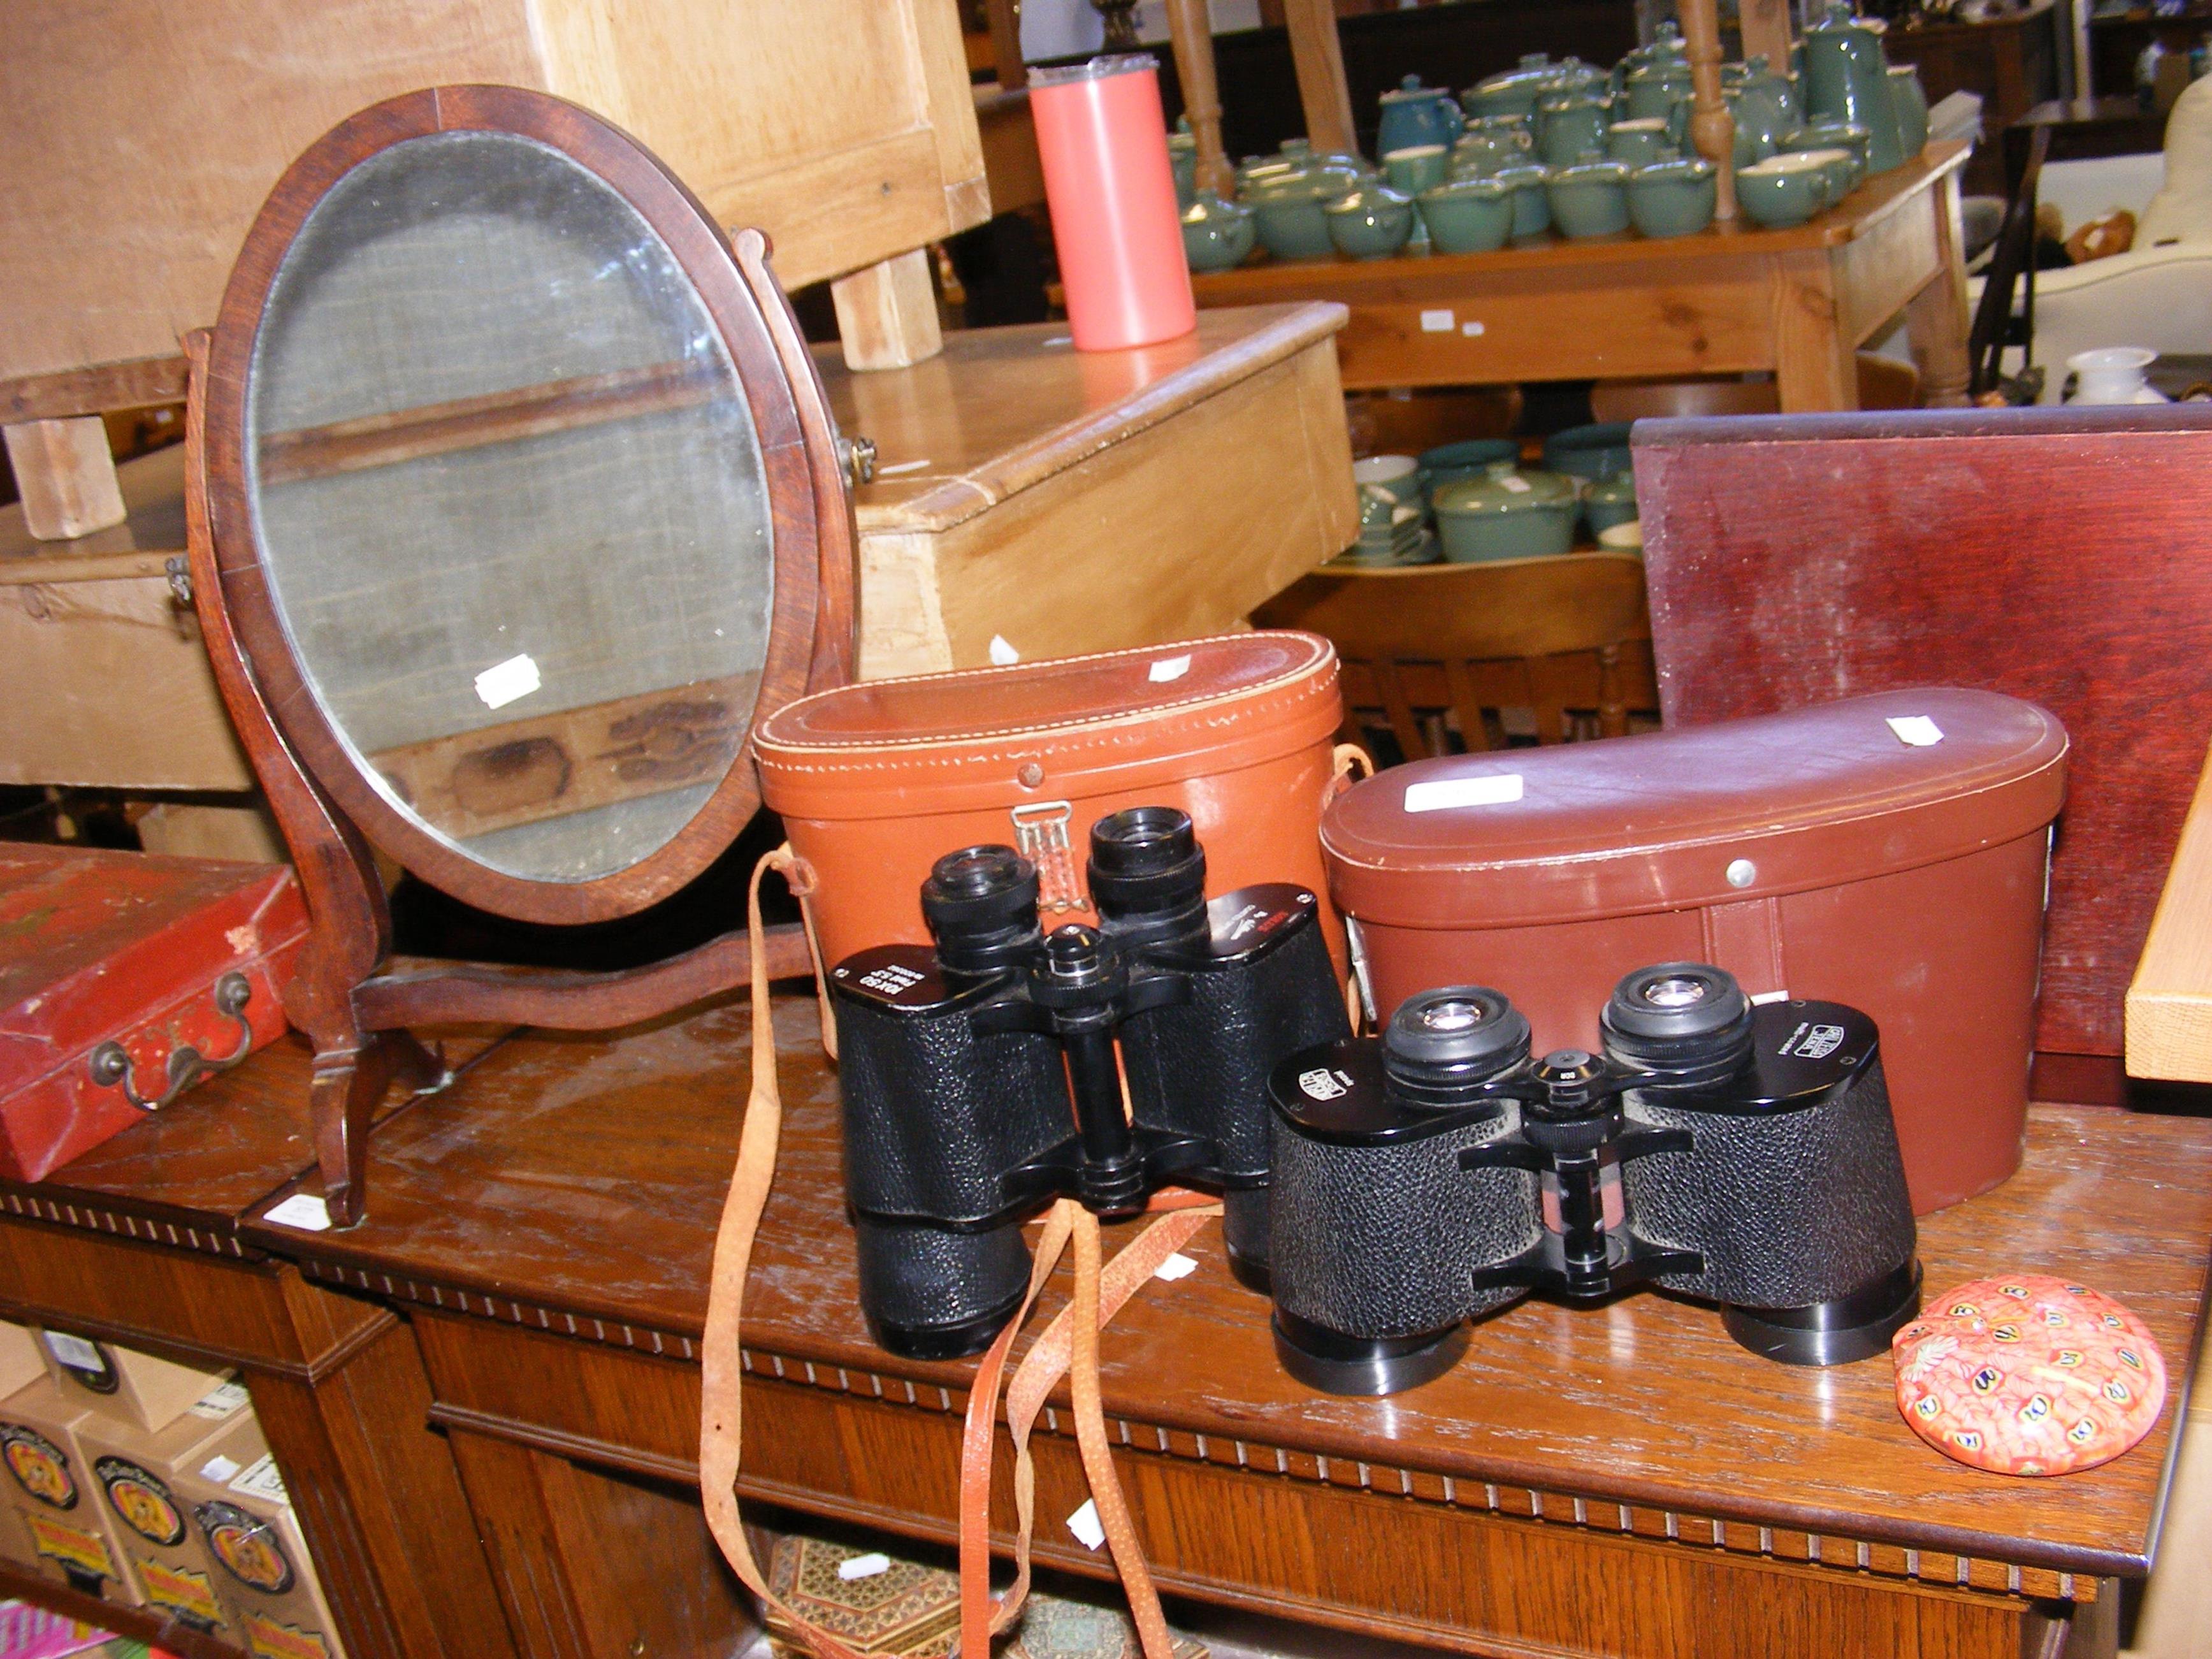 Two pairs of vintage binoculars, an oval toilet mi